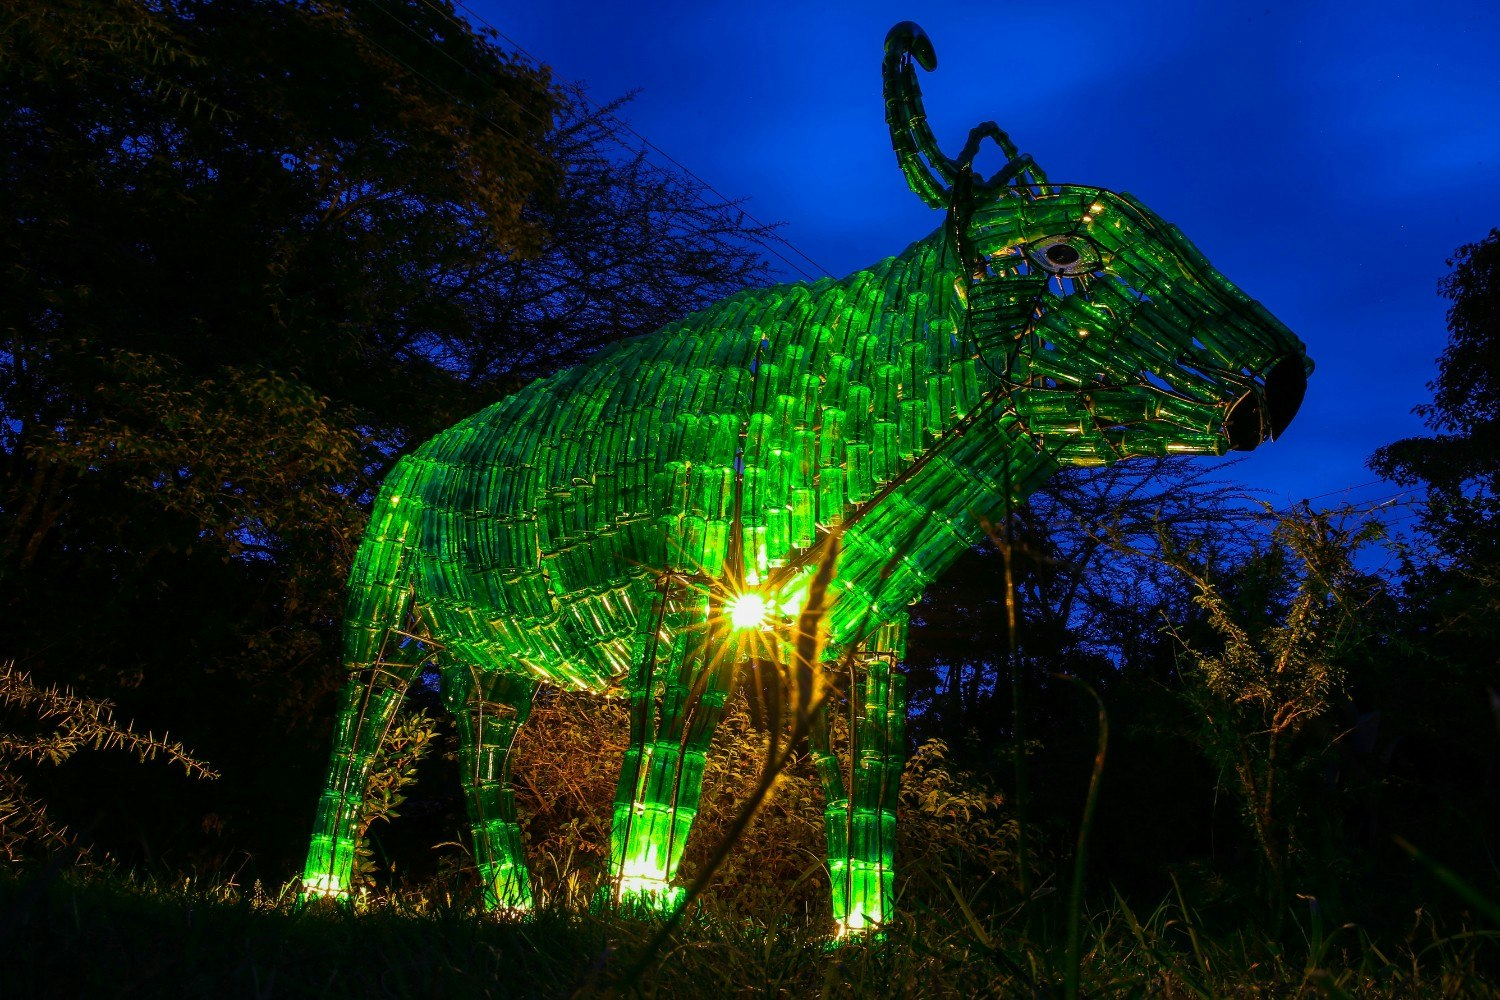 A green buffalo statue in Nairobi